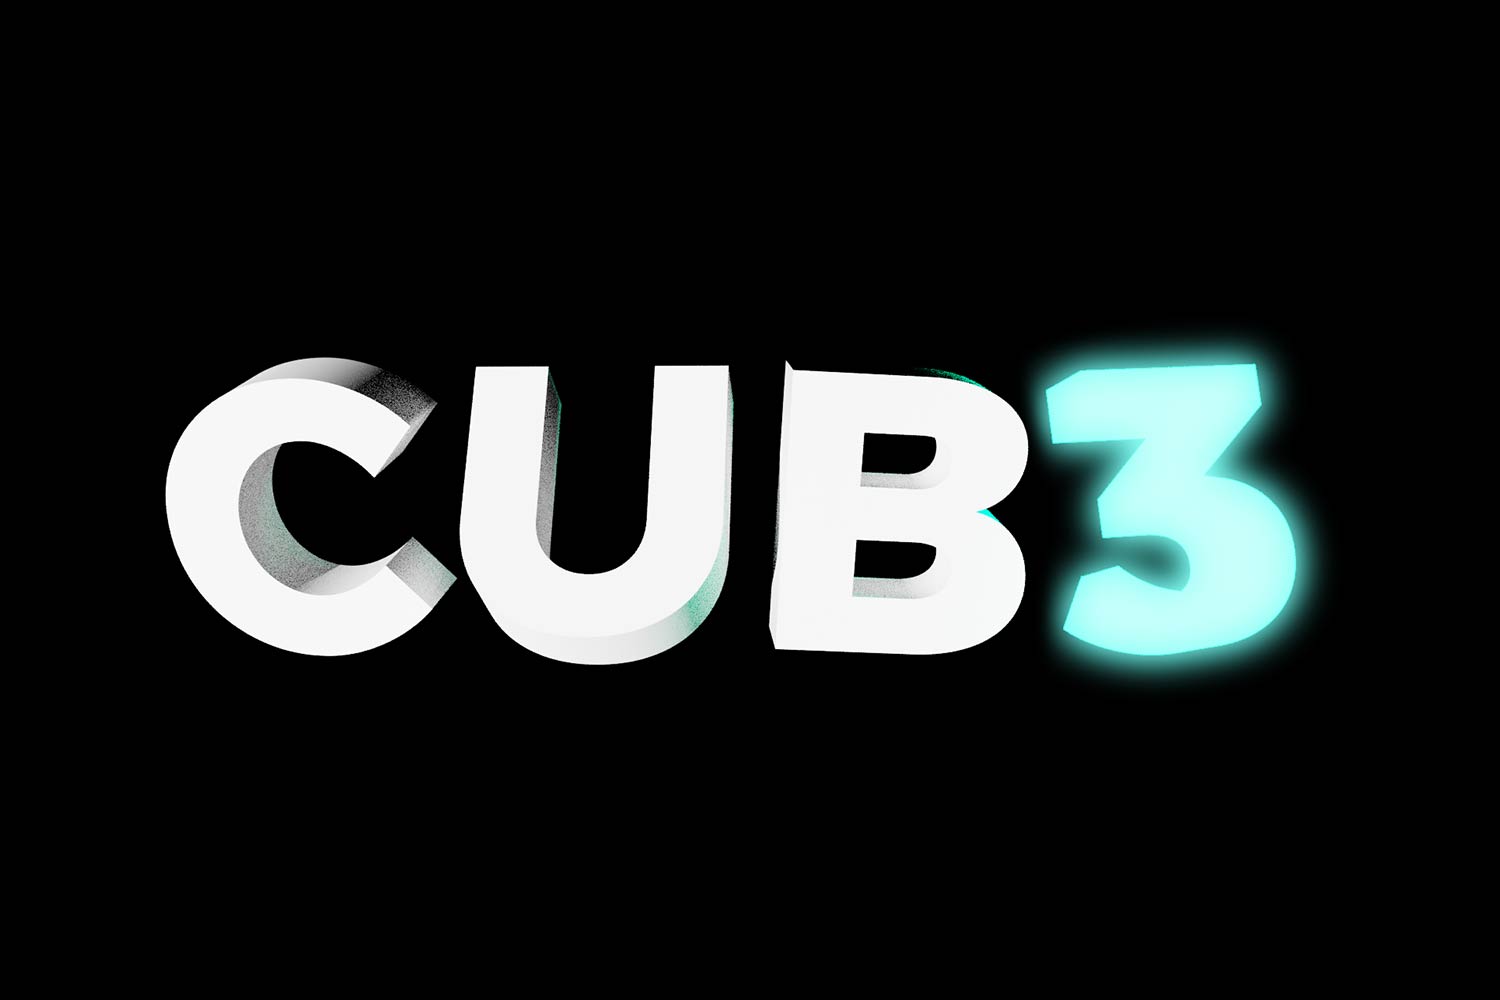 CUB3